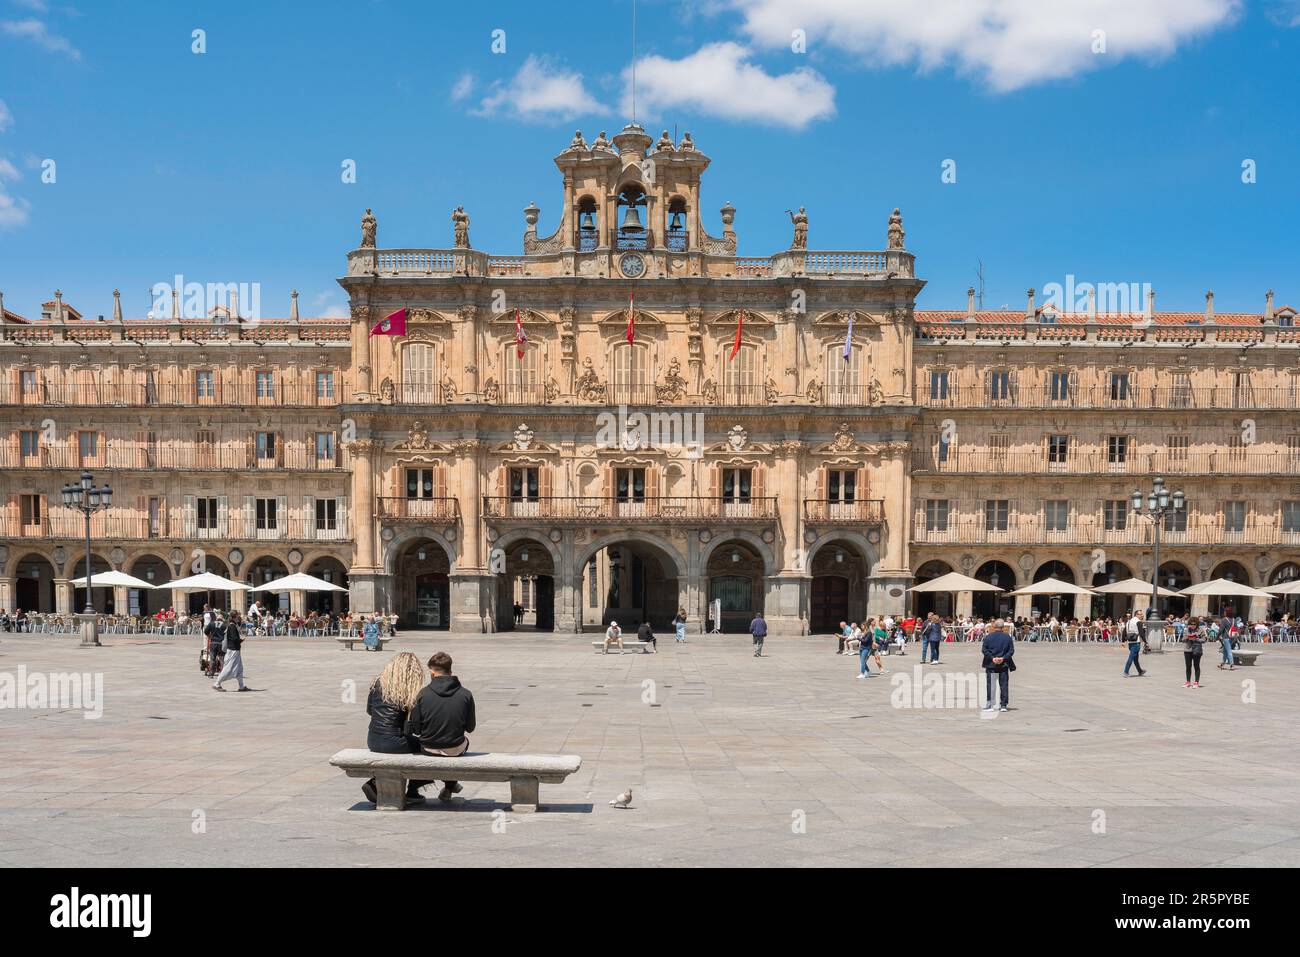 Salamanca Barockplatz, Blick im Sommer auf das große Rathaus, das sich auf der barocken Plaza Mayor in der historischen spanischen Stadt Salamanca, Spanien, befindet Stockfoto